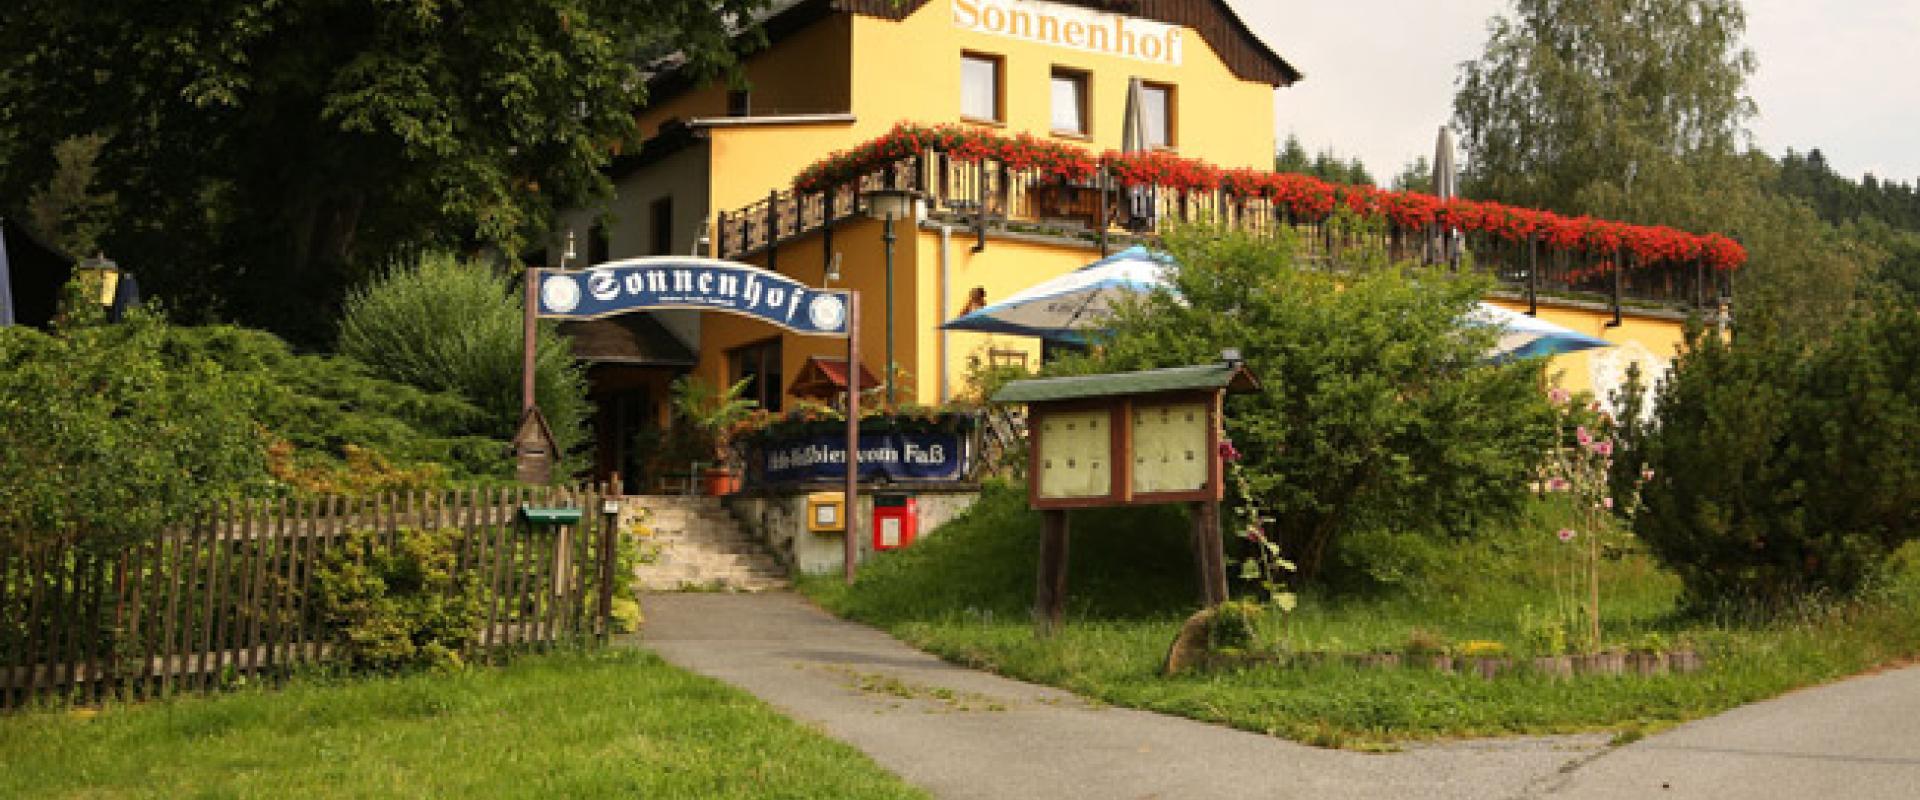 15981 Biker Hotel Sonnenhof in der Sächsischen Schweiz.jpg